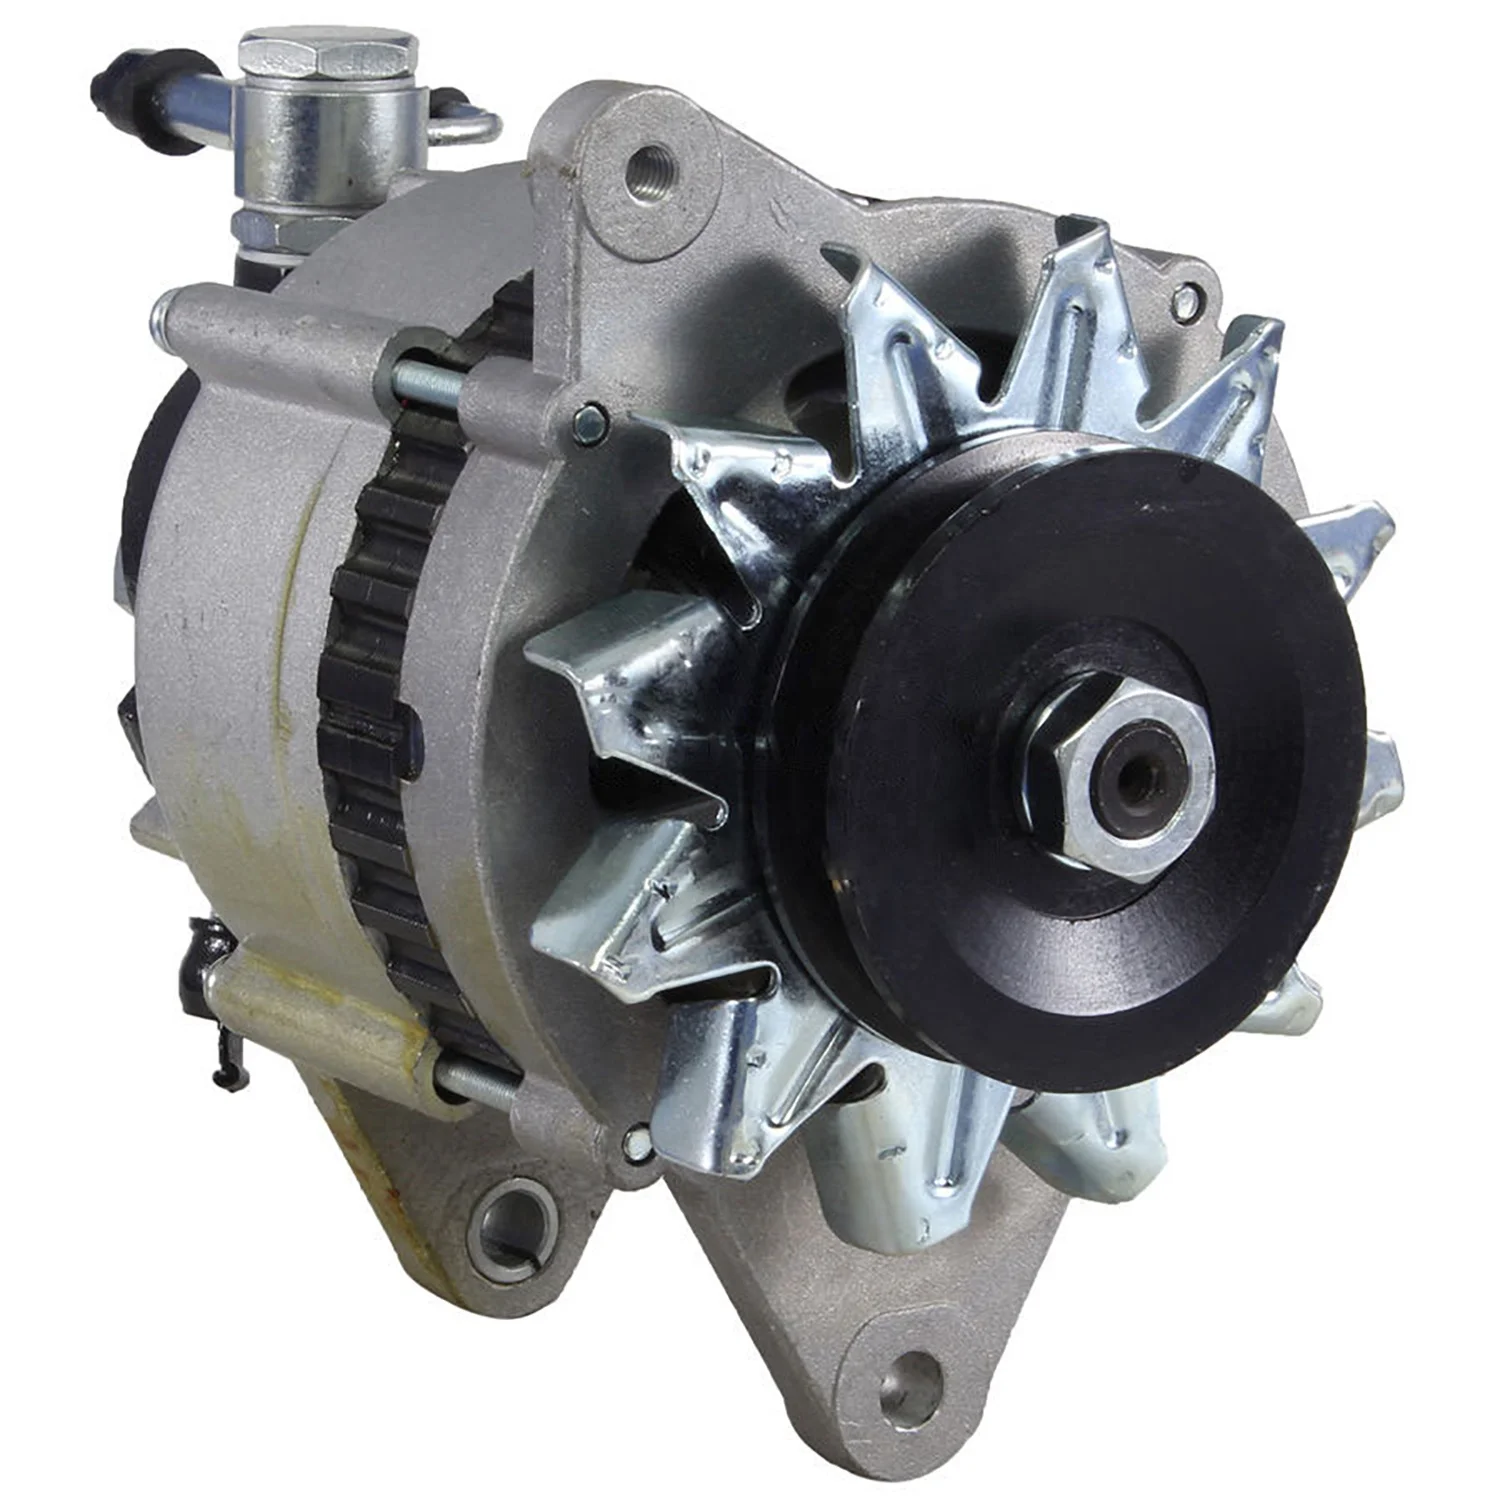 

Auto Dynamo Alternator Generator For BSH Delco GM Hitachi ISZ Lucas VLEO 0986037811 0986037831 111187 CAL20117AS DRA3275 6204058